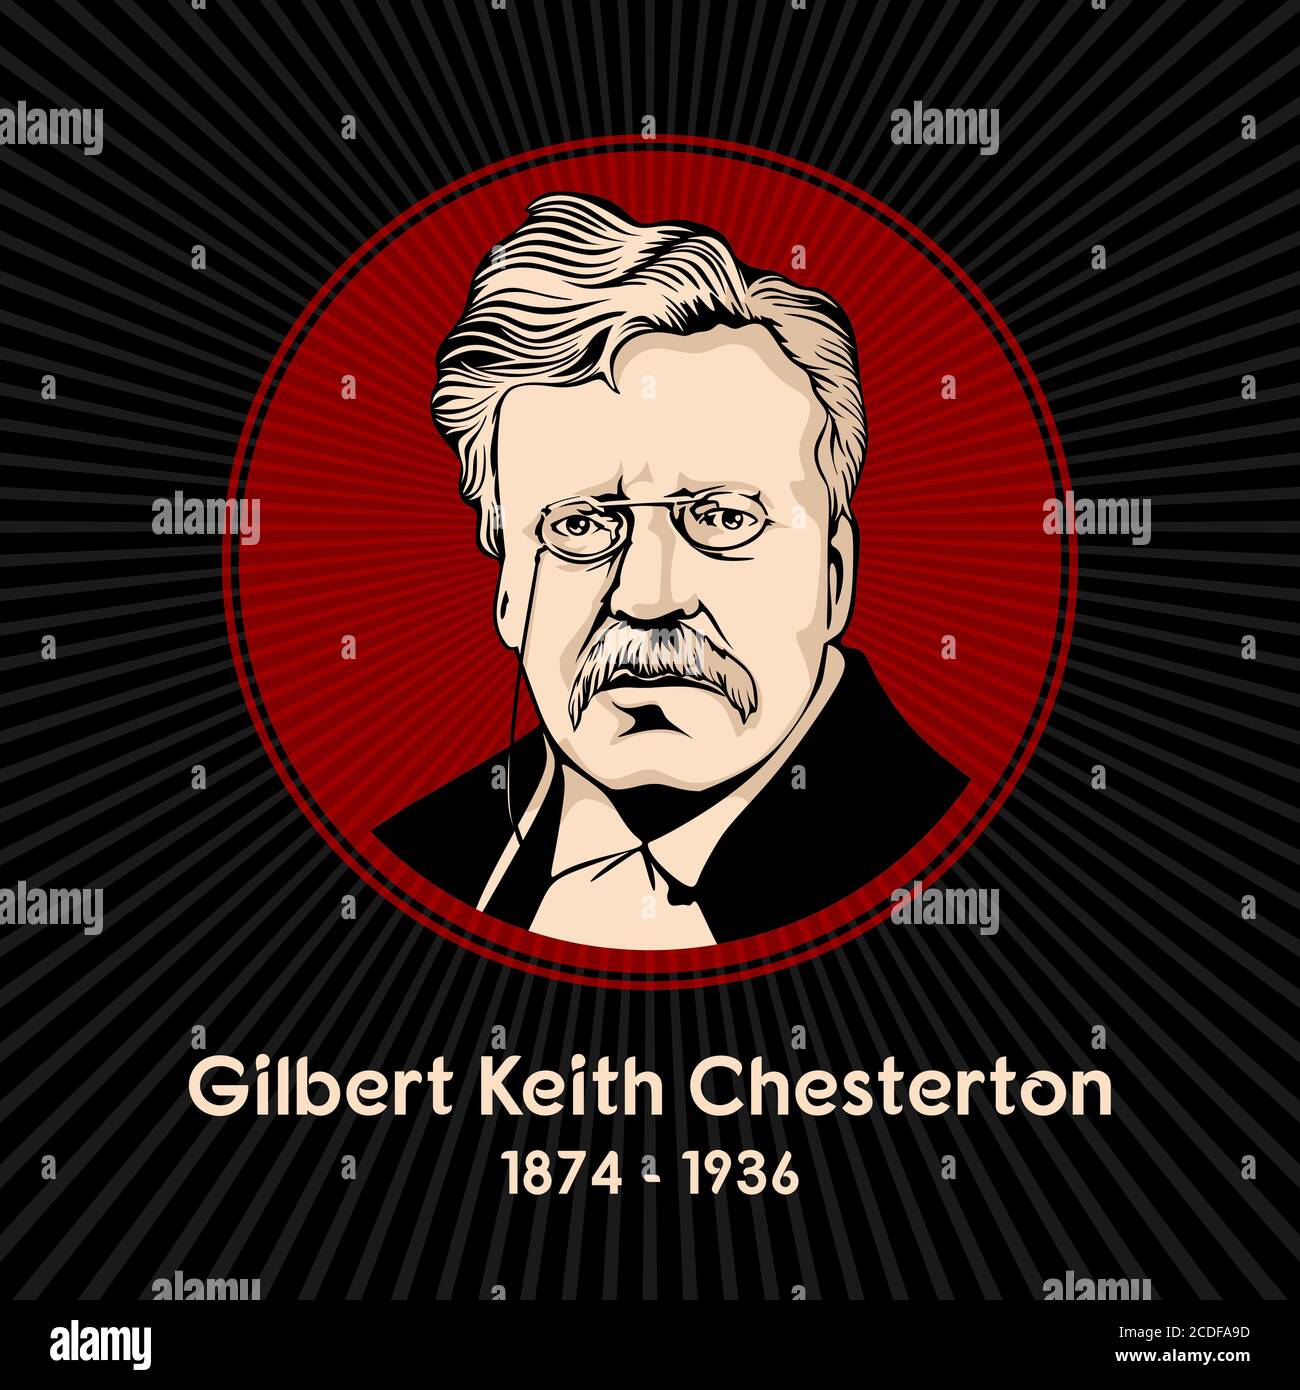 Gilbert Keith Chesterton (1874 - 1936) war ein englischer Schriftsteller, Philosoph, Laientheologe, Literatur-und Kunstkritiker. Stock Vektor